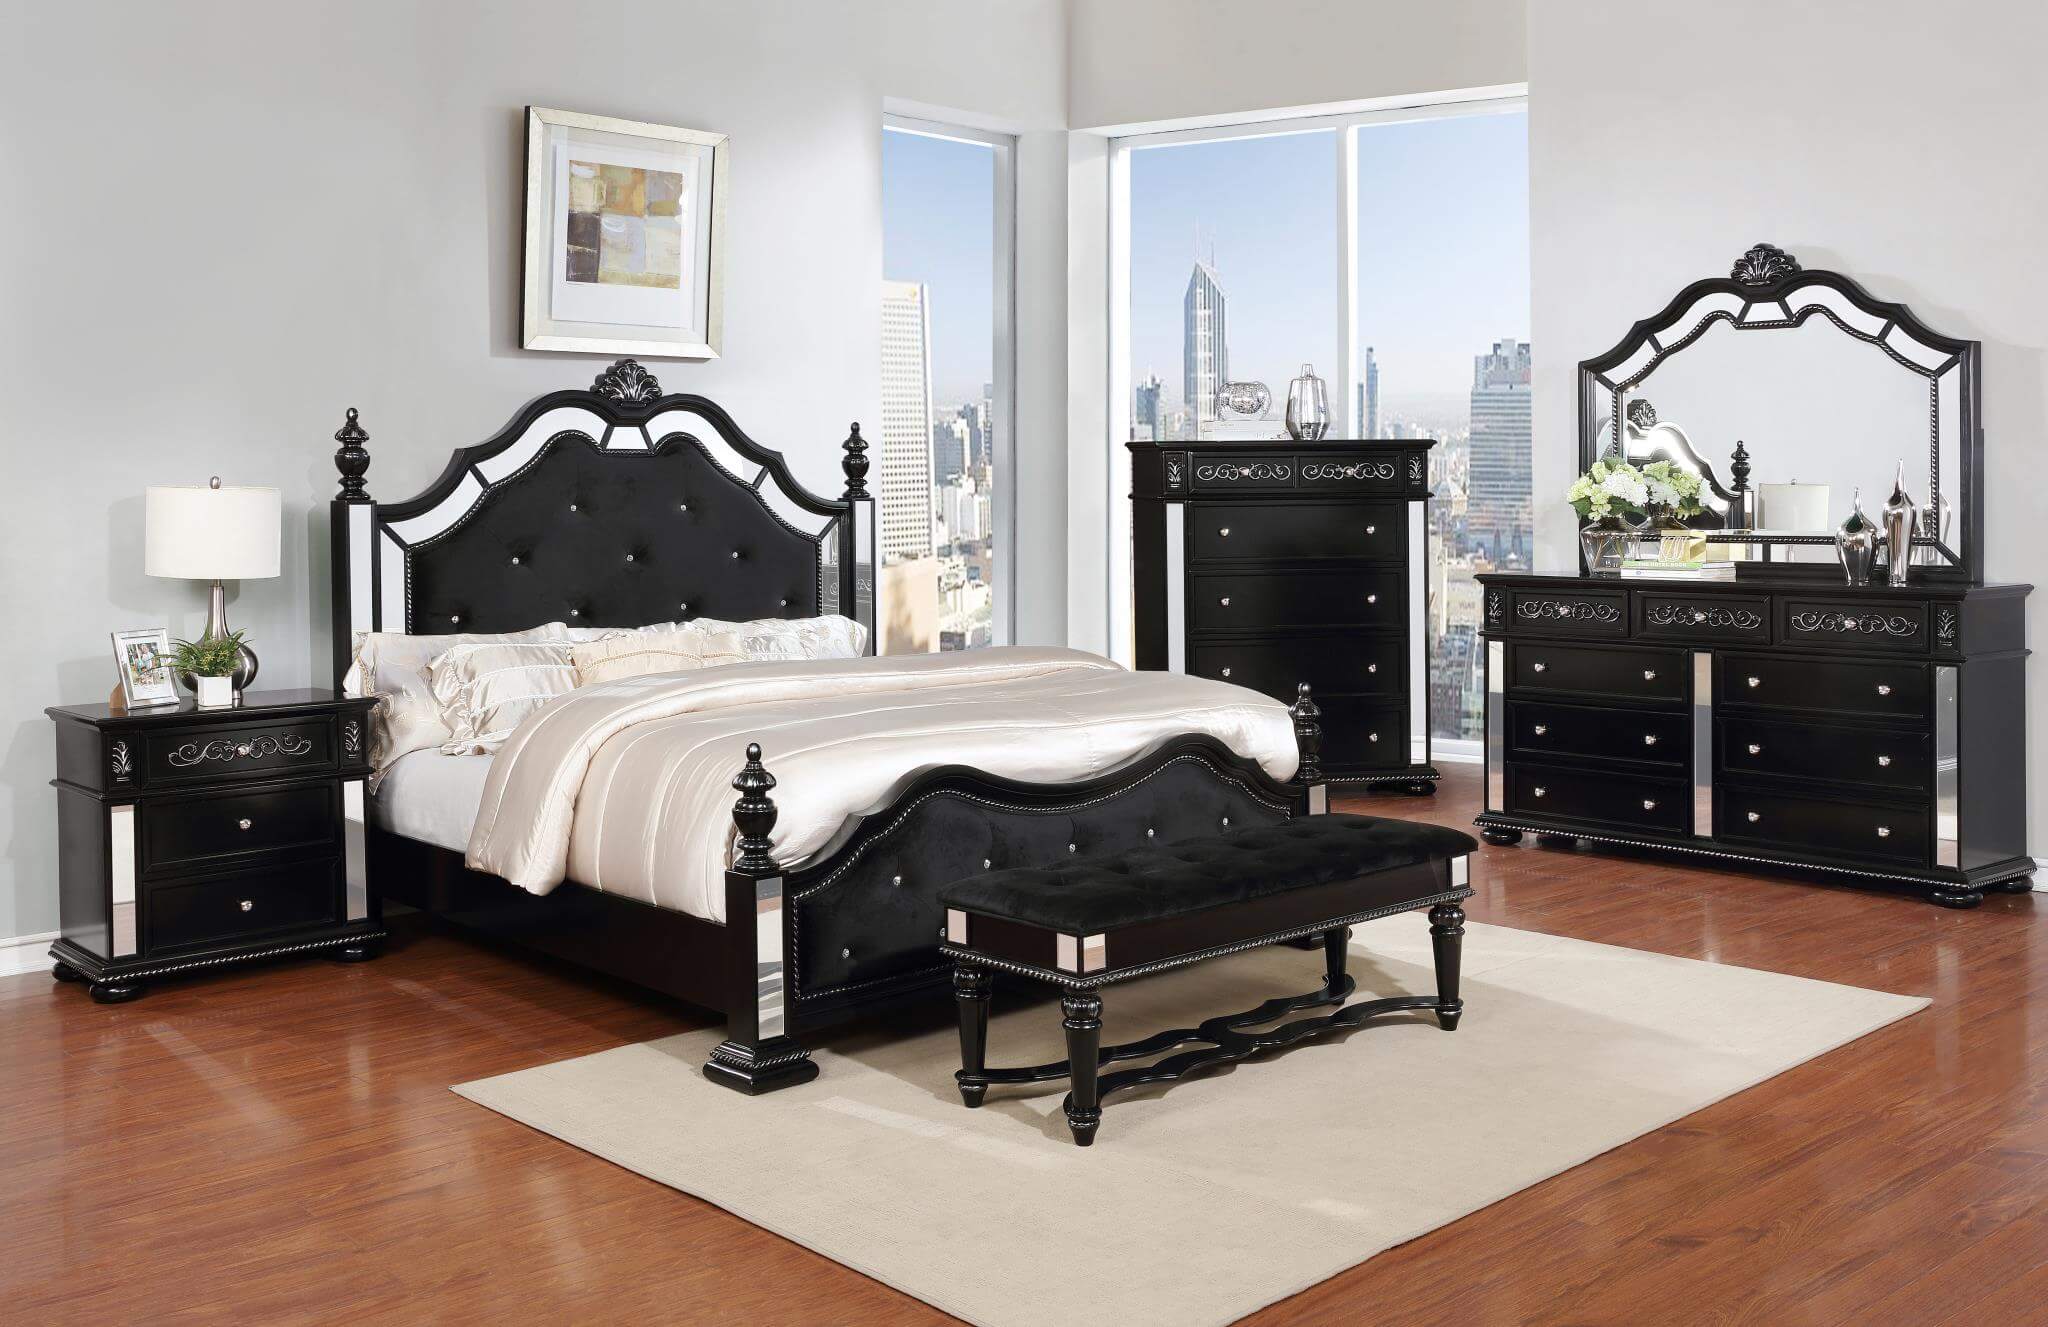 Elegant Black Bedroom Set Bedroom Furniture Sets,Craftsman Style Bedroom Furniture